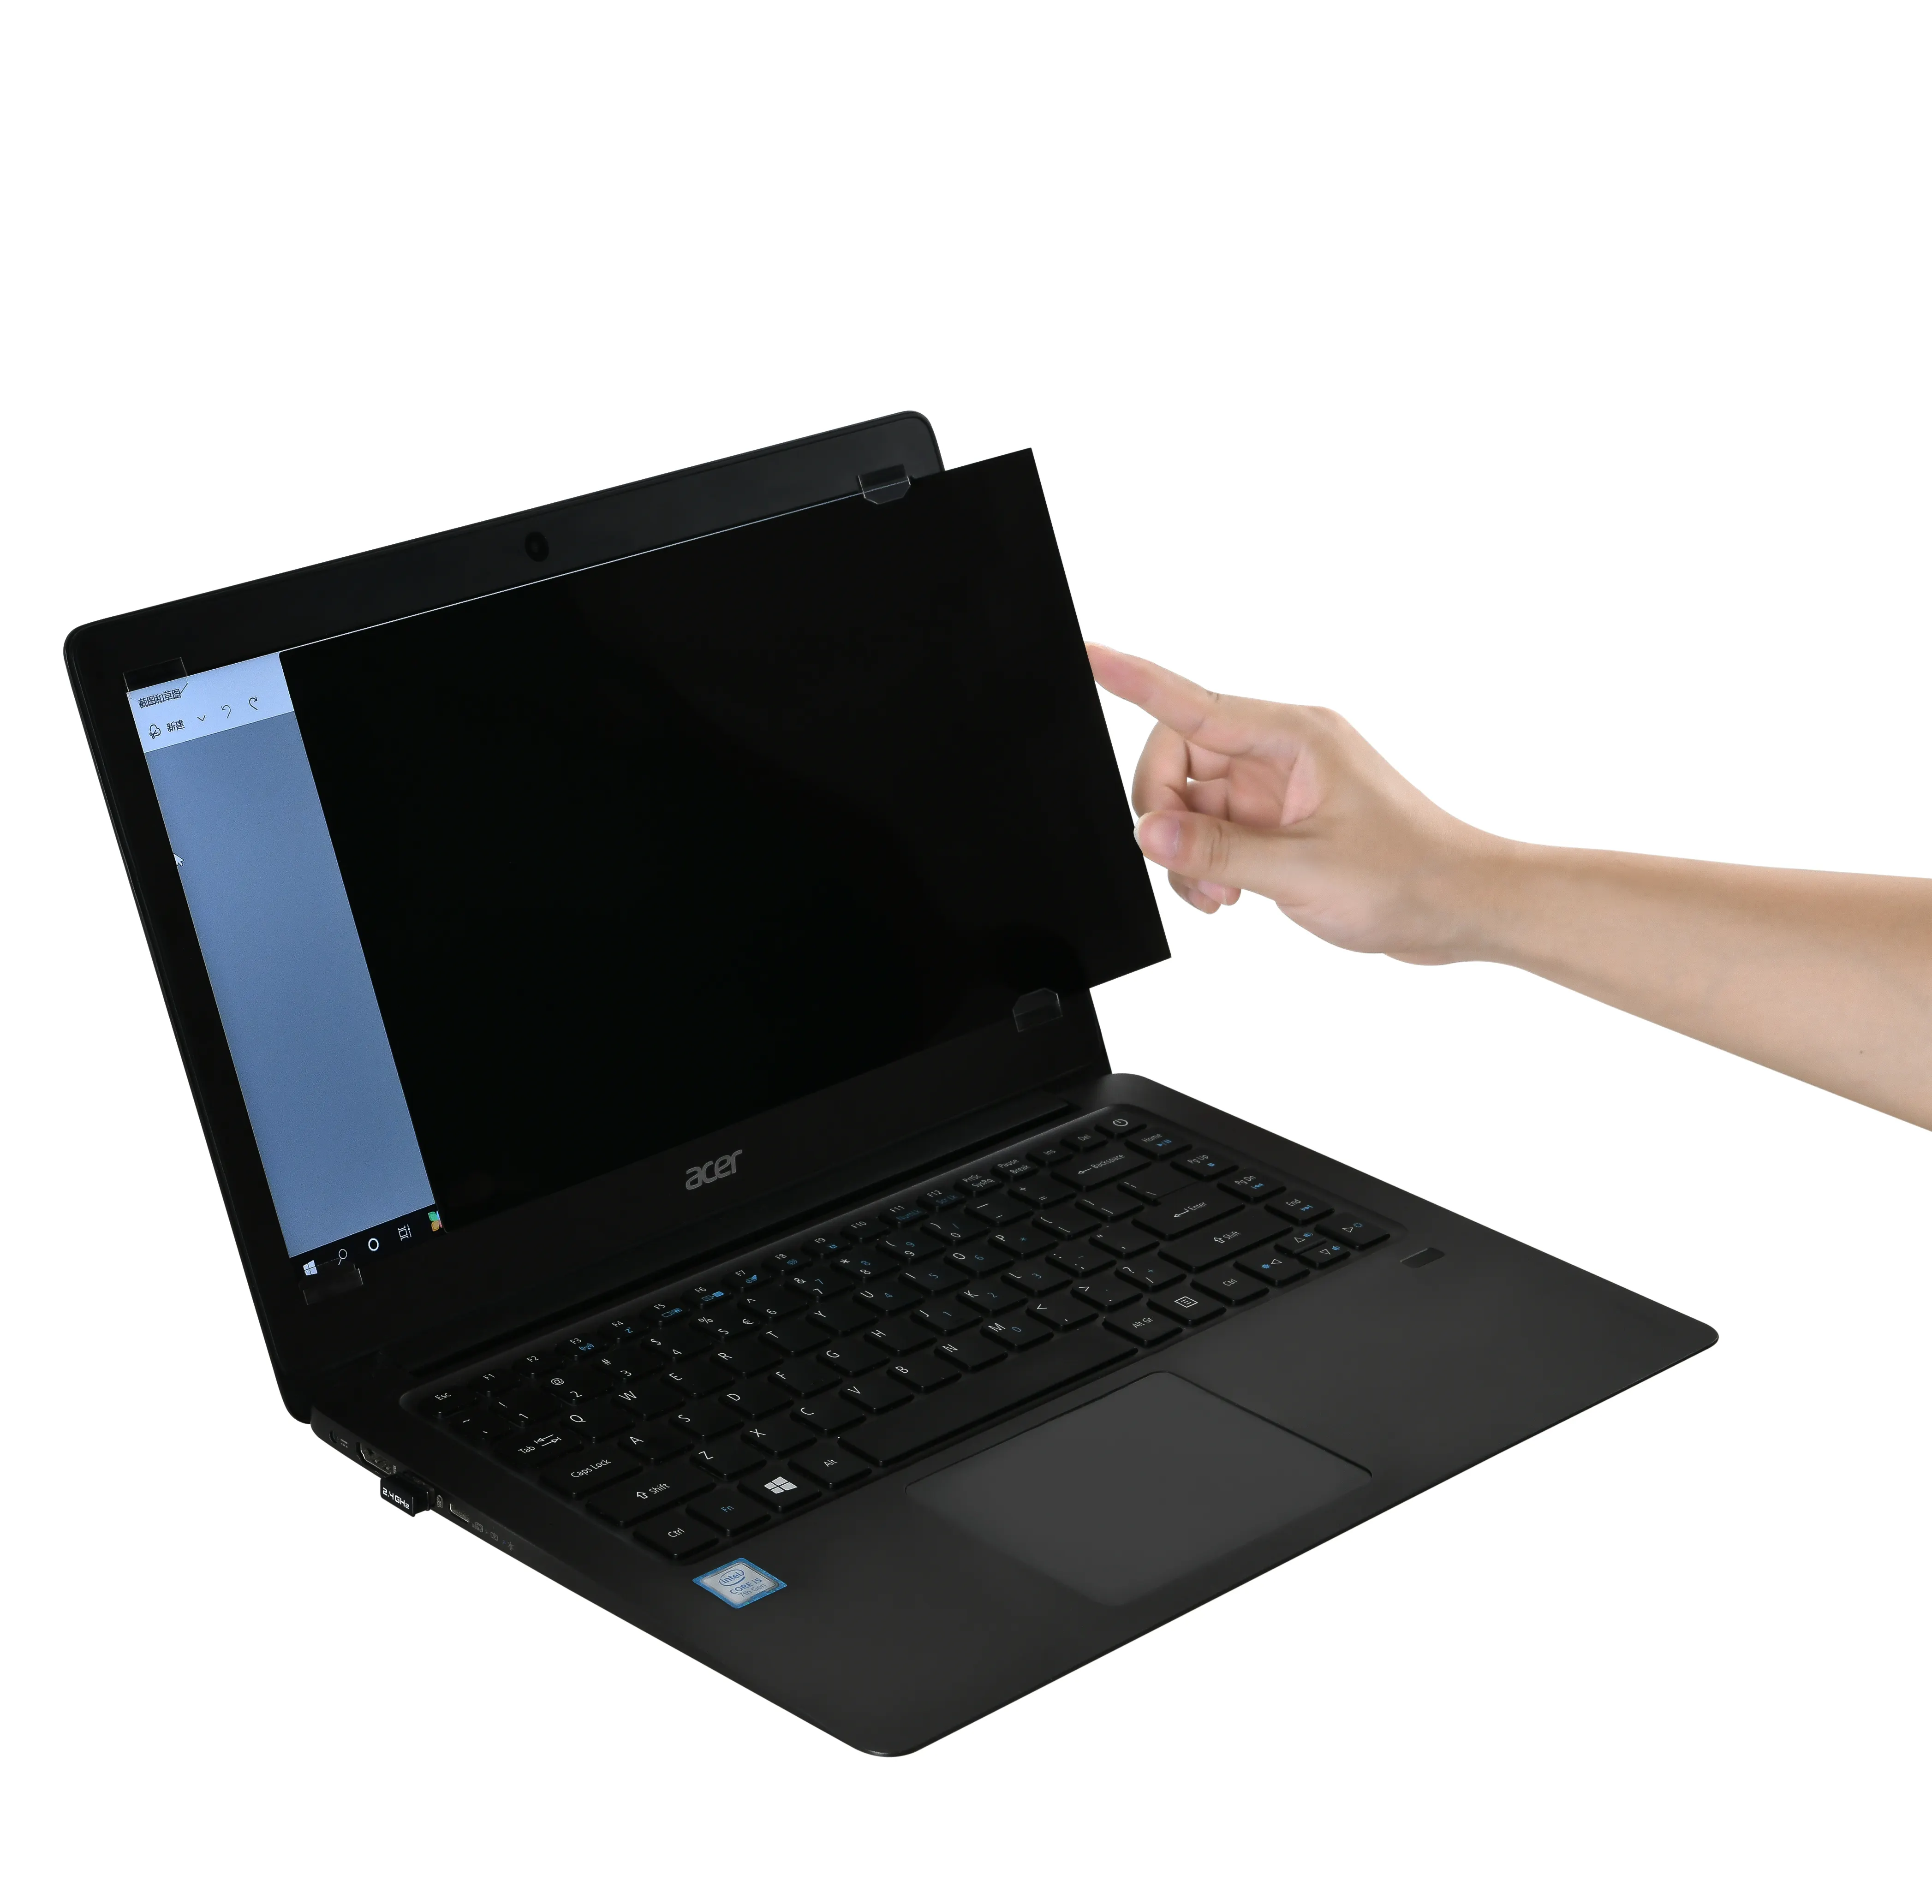 बेस्टसेलर विरोधी जासूस गोपनीयता स्क्रीन रक्षक के लिए कंप्यूटर और लैपटॉप यूवी संरक्षण आसान स्थापित करने के लिए दोनों पक्षों पर उपलब्ध